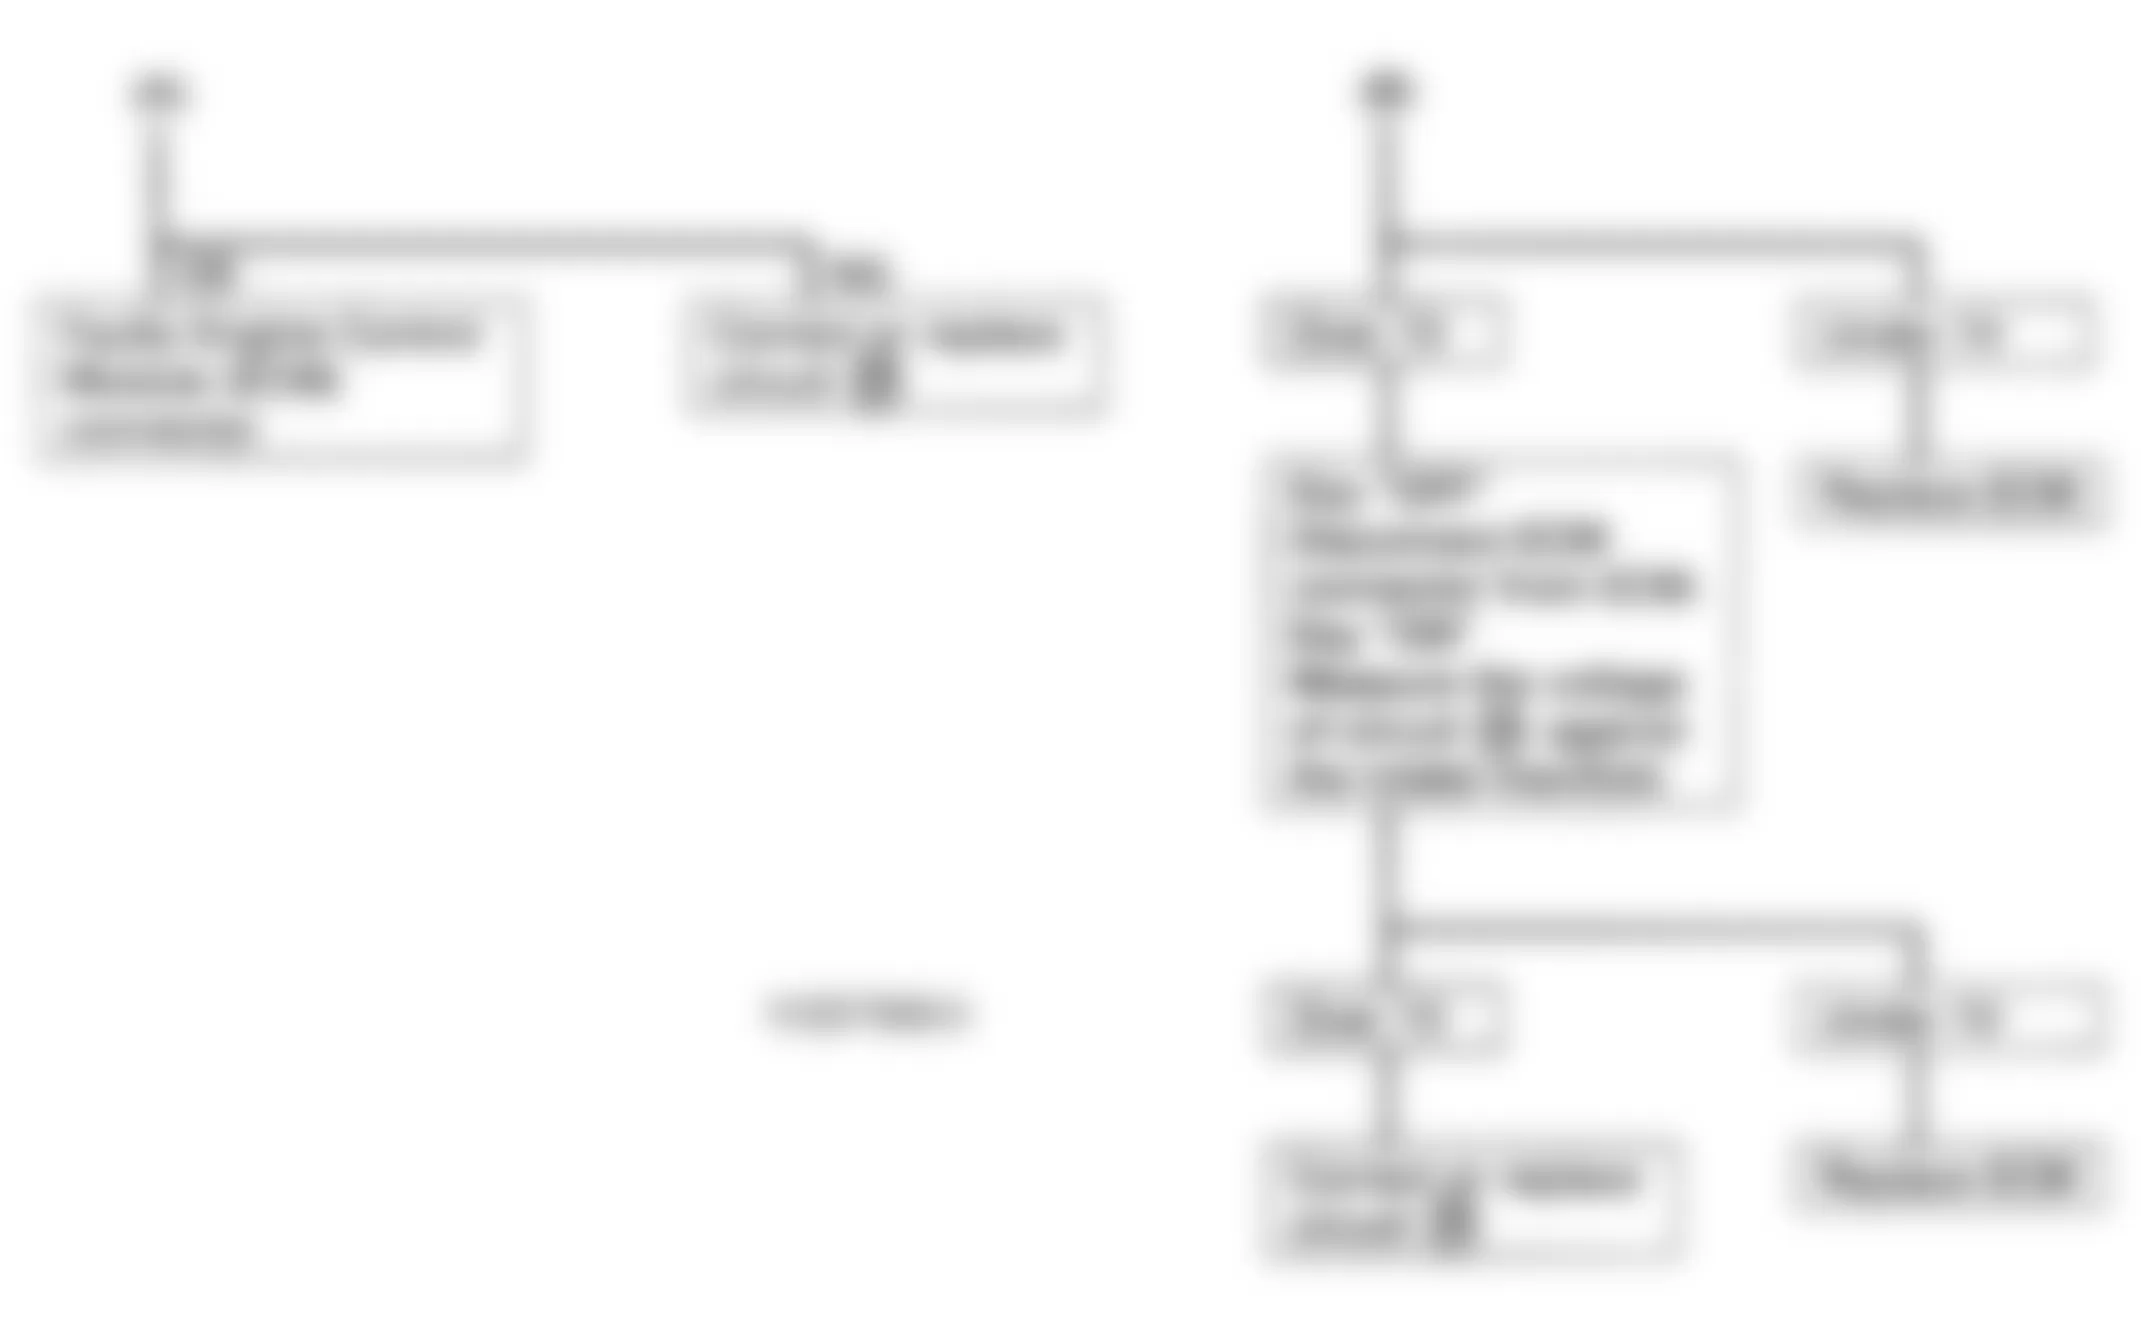 Isuzu Rodeo LS 1995 - Component Locations -  Code 26, 27 - Diagnostic Flowchart (2 Of 2)